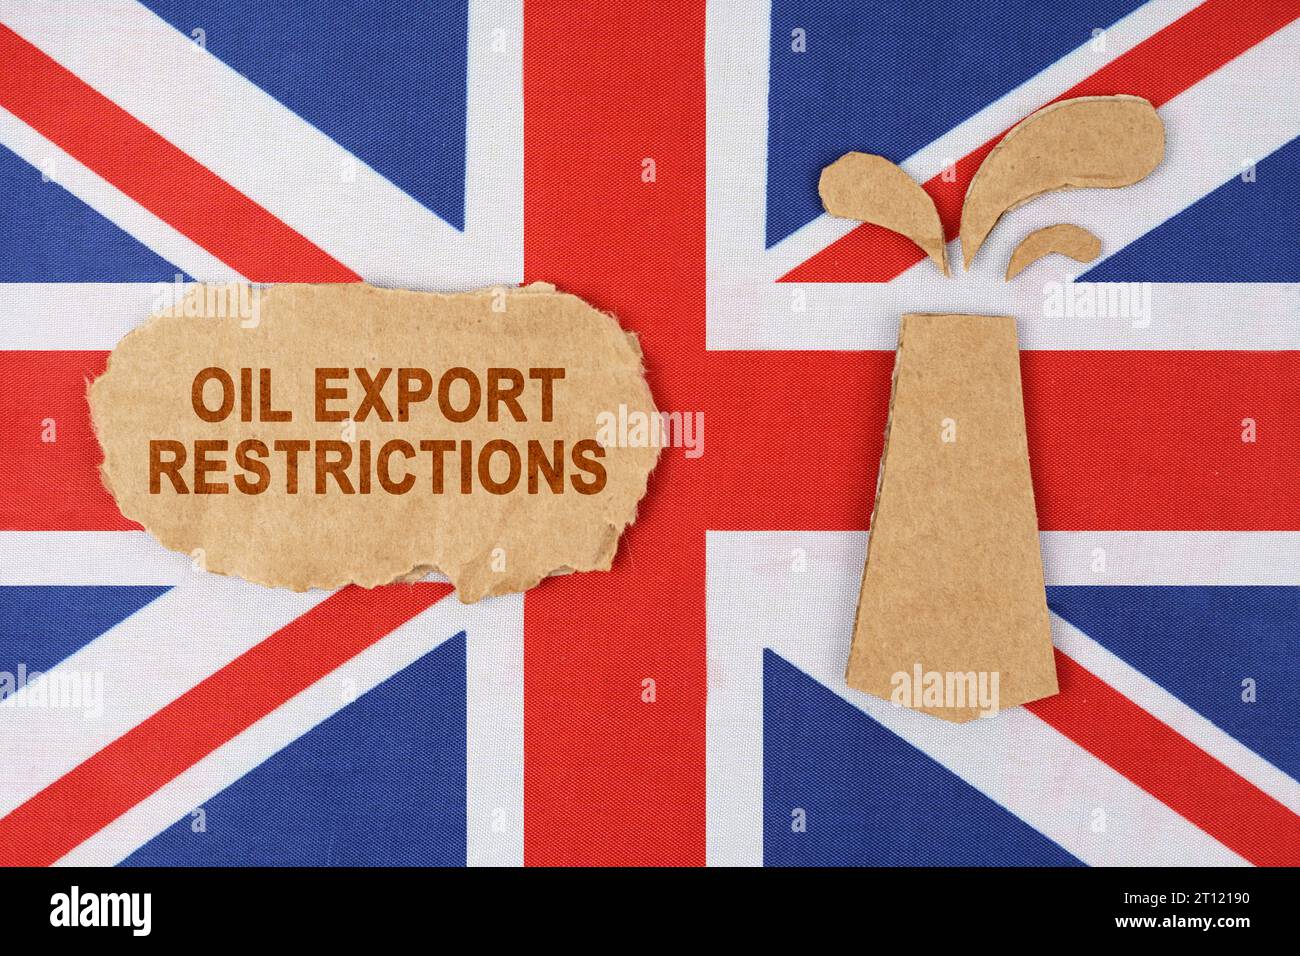 Sulla bandiera della Gran Bretagna c'è una piattaforma petrolifera tagliata di cartone e un cartello con l'iscrizione "restrizioni all'esportazione di petrolio". Foto Stock